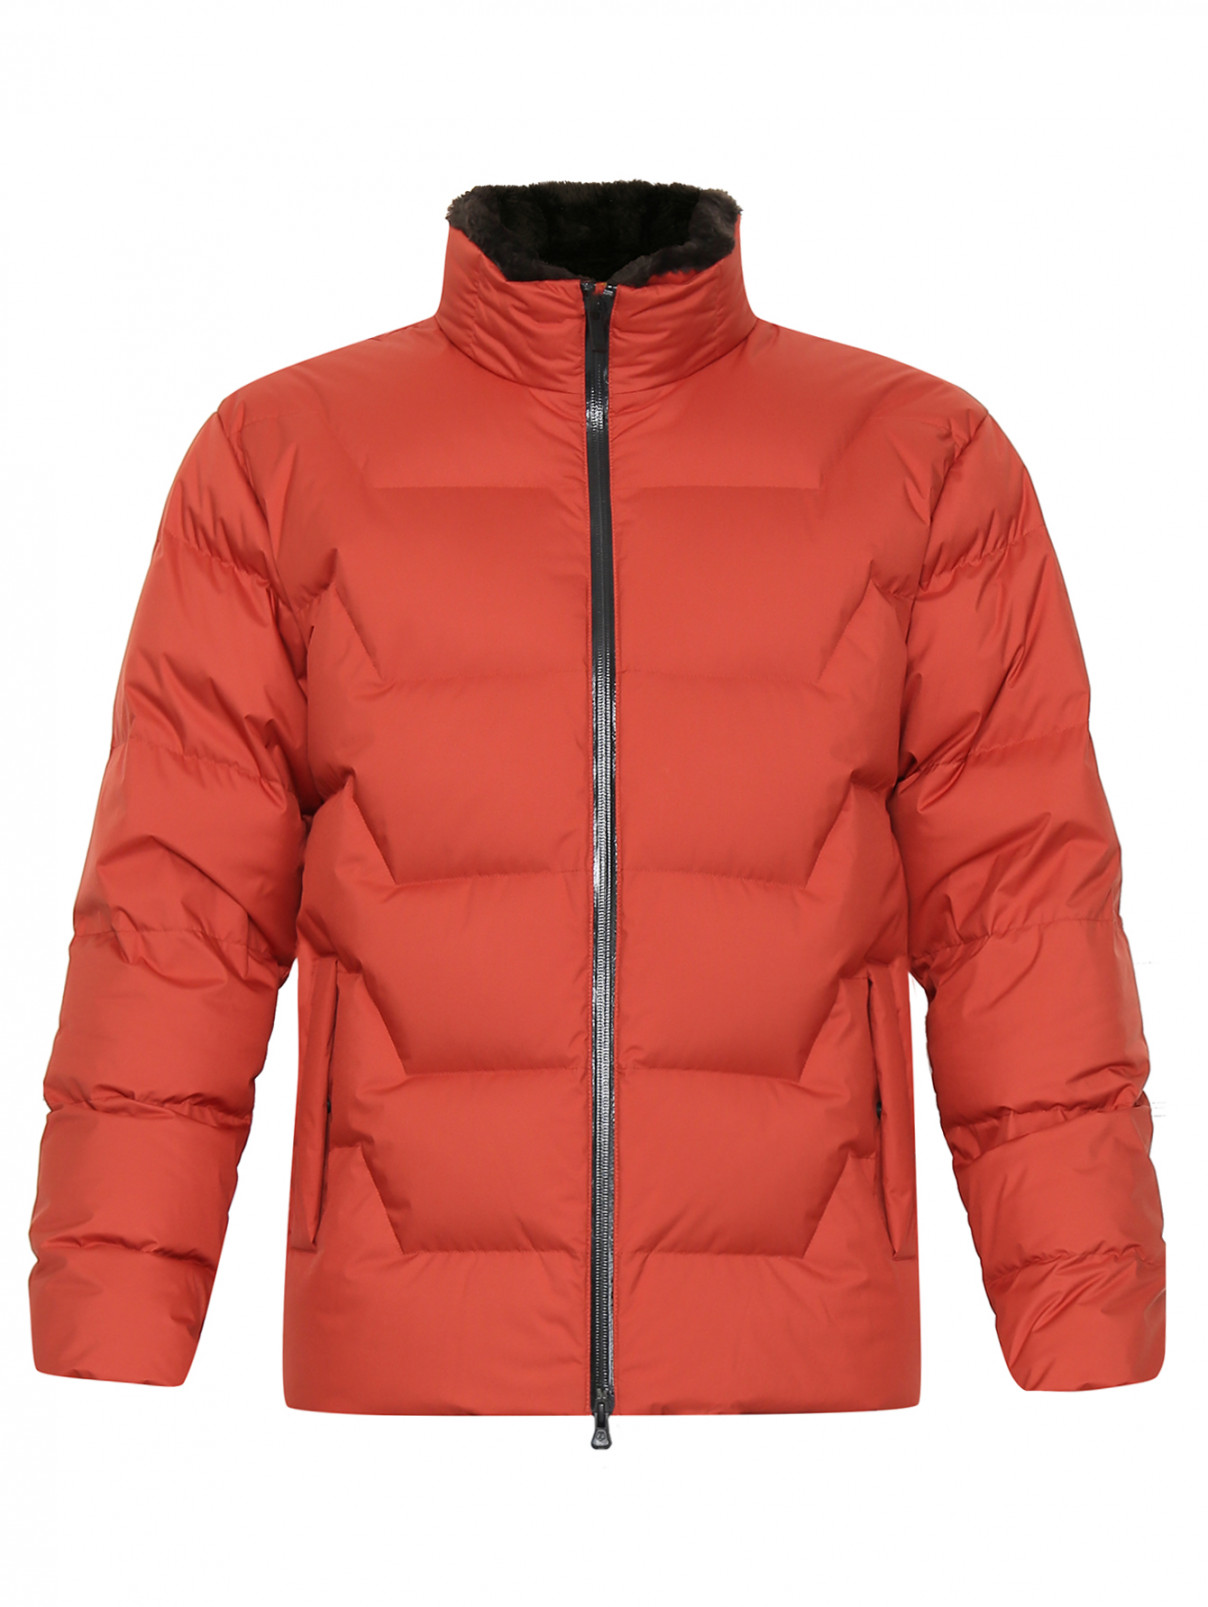 Куртка стеганая Ermenegildo Zegna  –  Общий вид  – Цвет:  Оранжевый